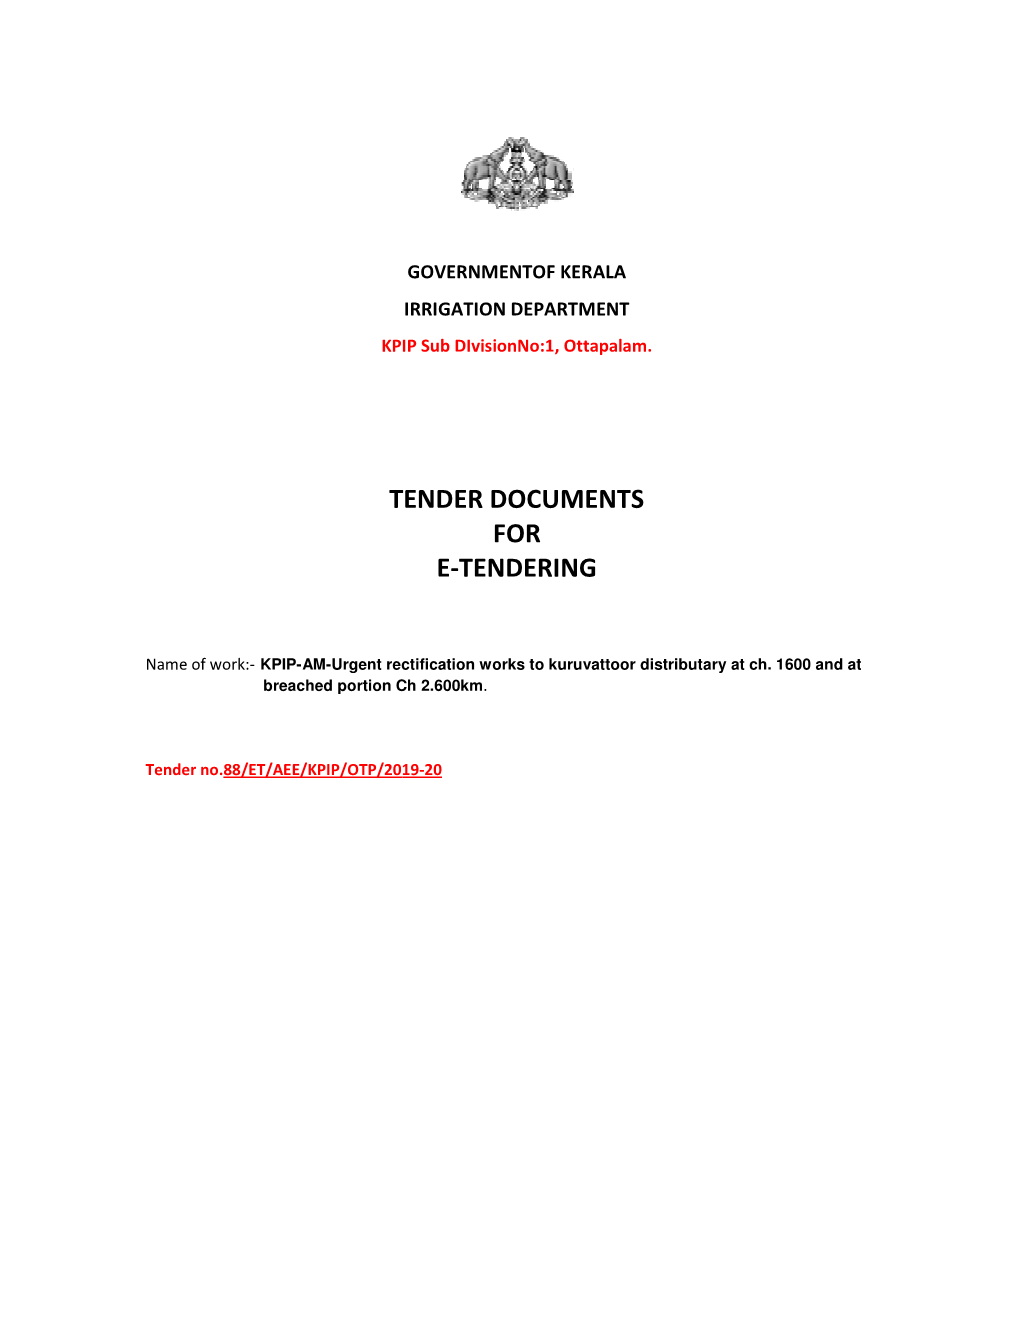 Tender Docu Tender Documents for E-Tendering